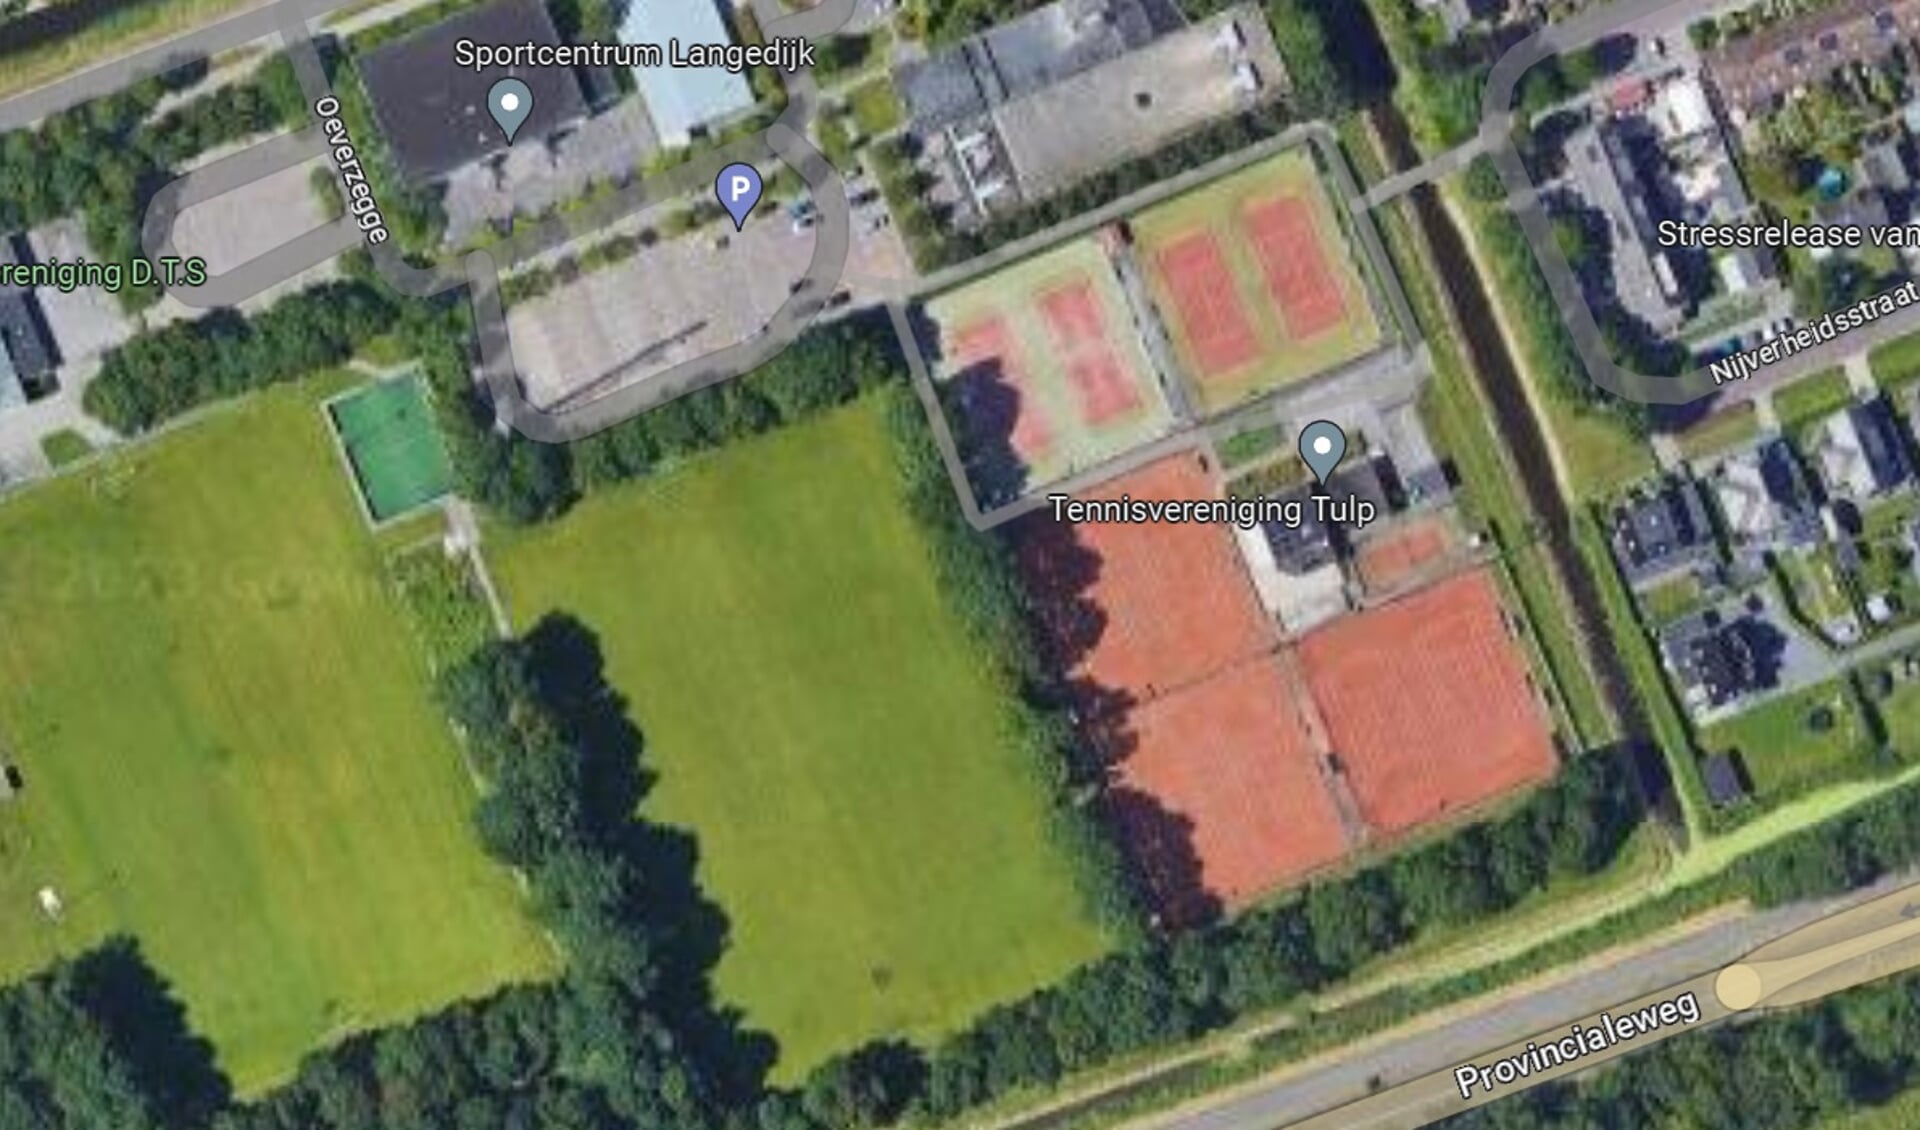 TV Tulp wil graag padelbanen aanleggen aan de kant van de voetbalvelden. De omwonenden rechts van het tennispark zien dit niet zitten.